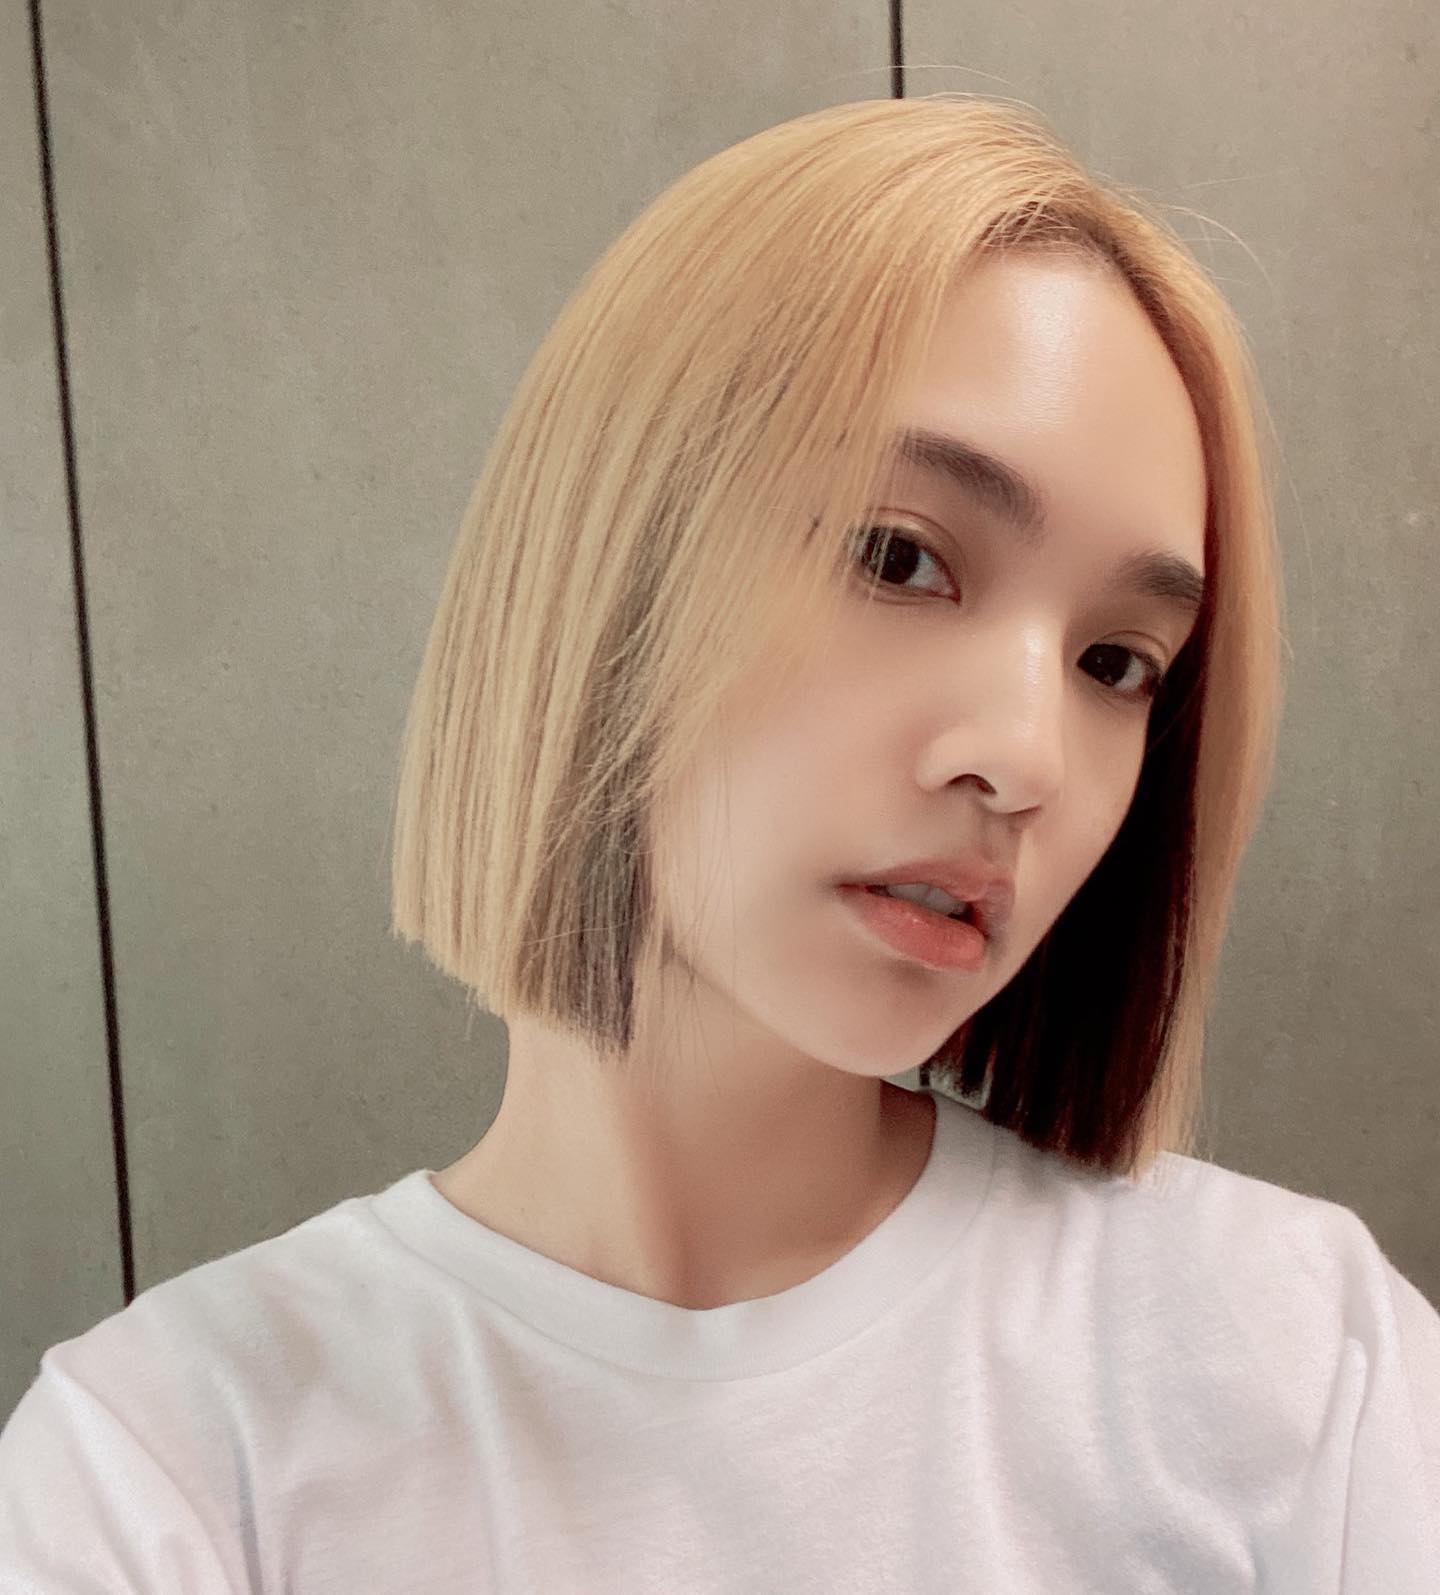 Dương Thừa Lâm, một trong những người mẫu nam đình đám nhất hiện nay sẽ giúp bạn tìm thấy sự hoàn hảo cho kiểu tóc của mình! Hãy xem hình ảnh về anh để lấy nguồn cảm hứng cho kiểu tóc của bạn.